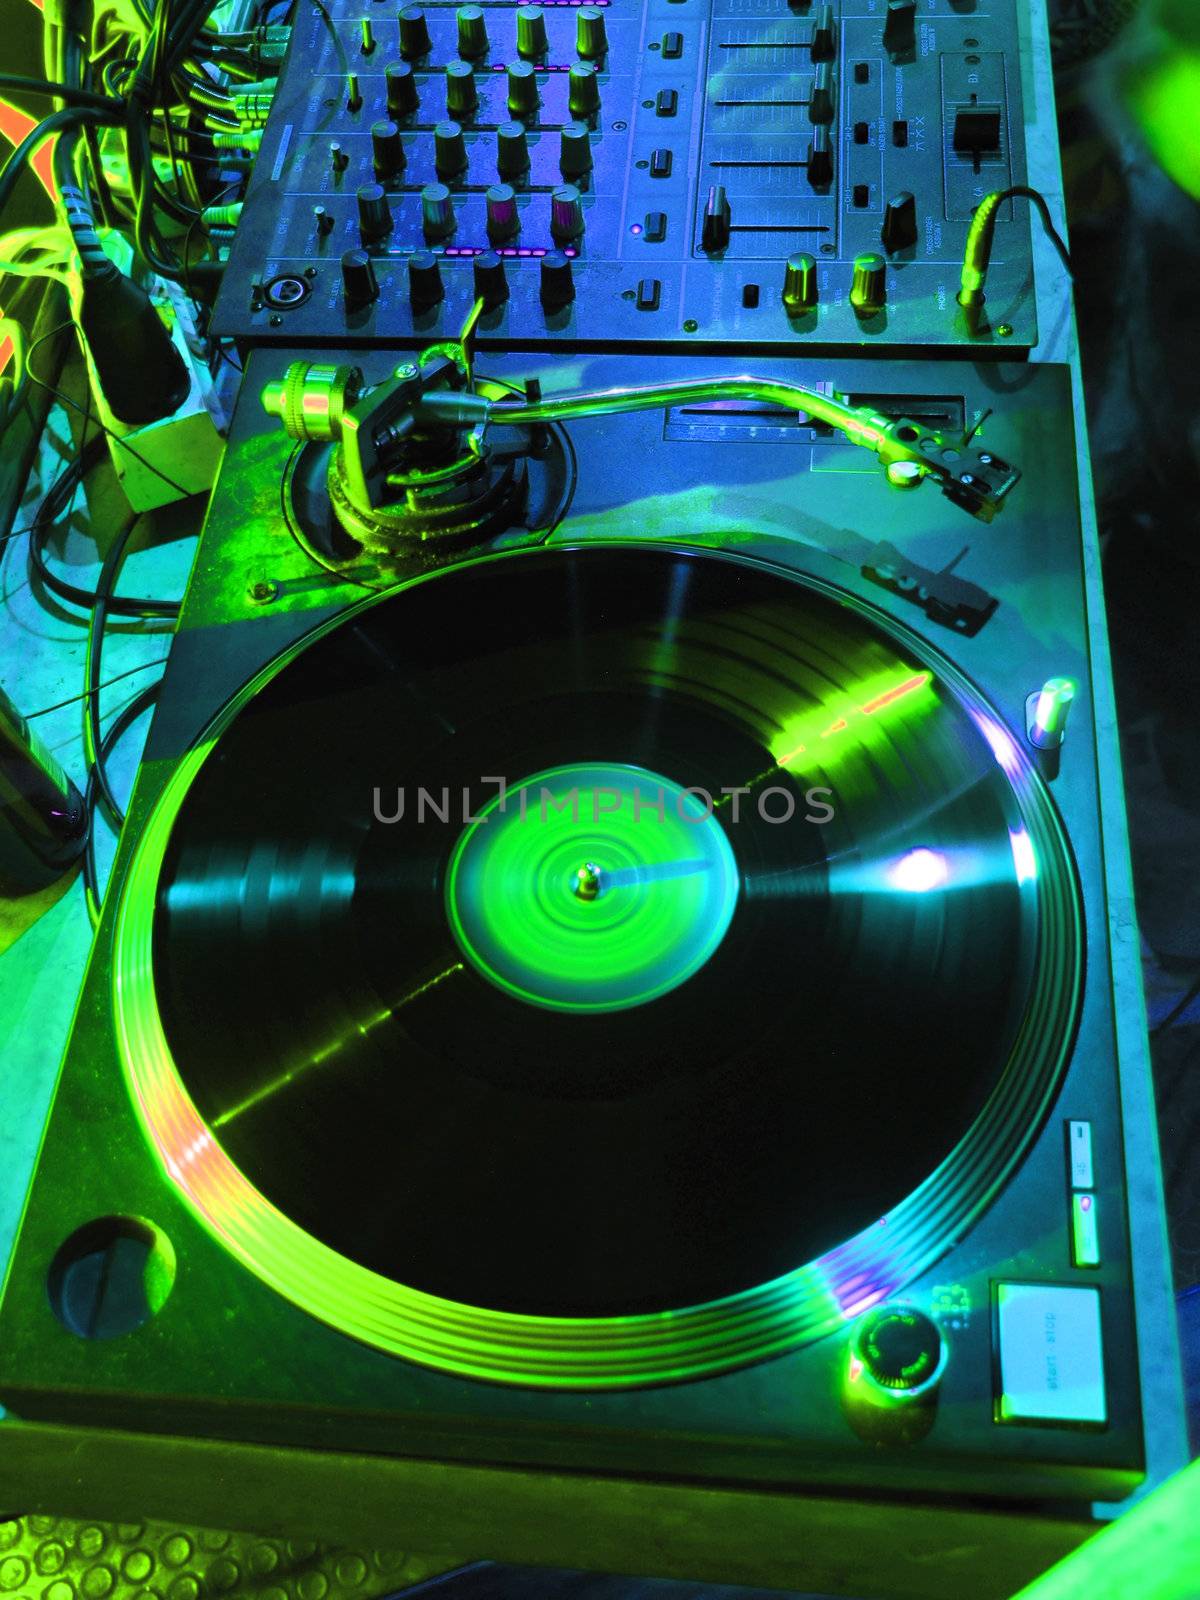 DJ's Music Equipment